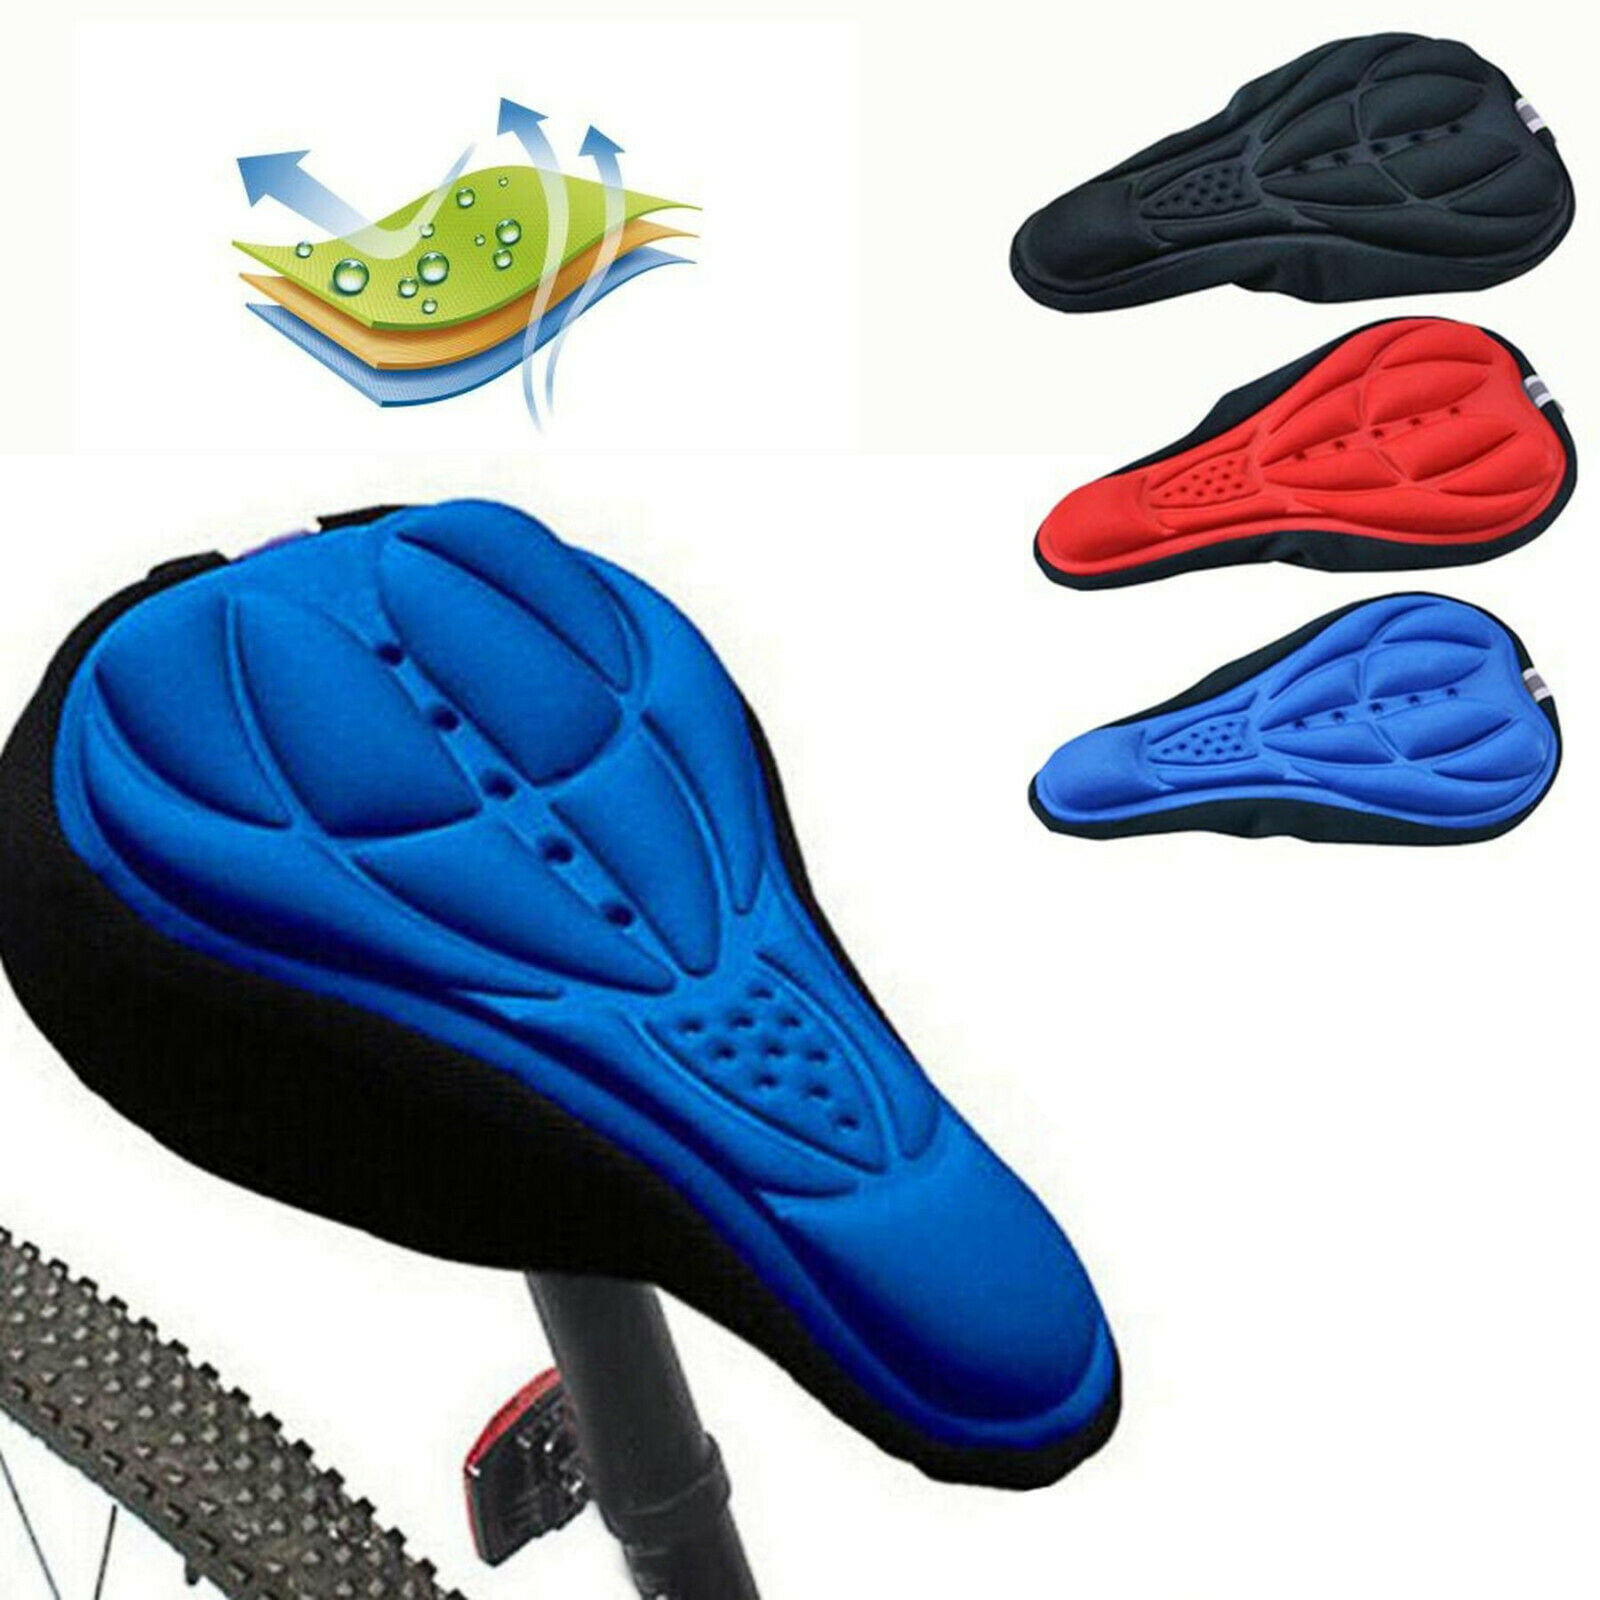 TukTek 3D Gel Foam Bicycle Seat Cover Pad for Soft Comfortable Bike Ride 